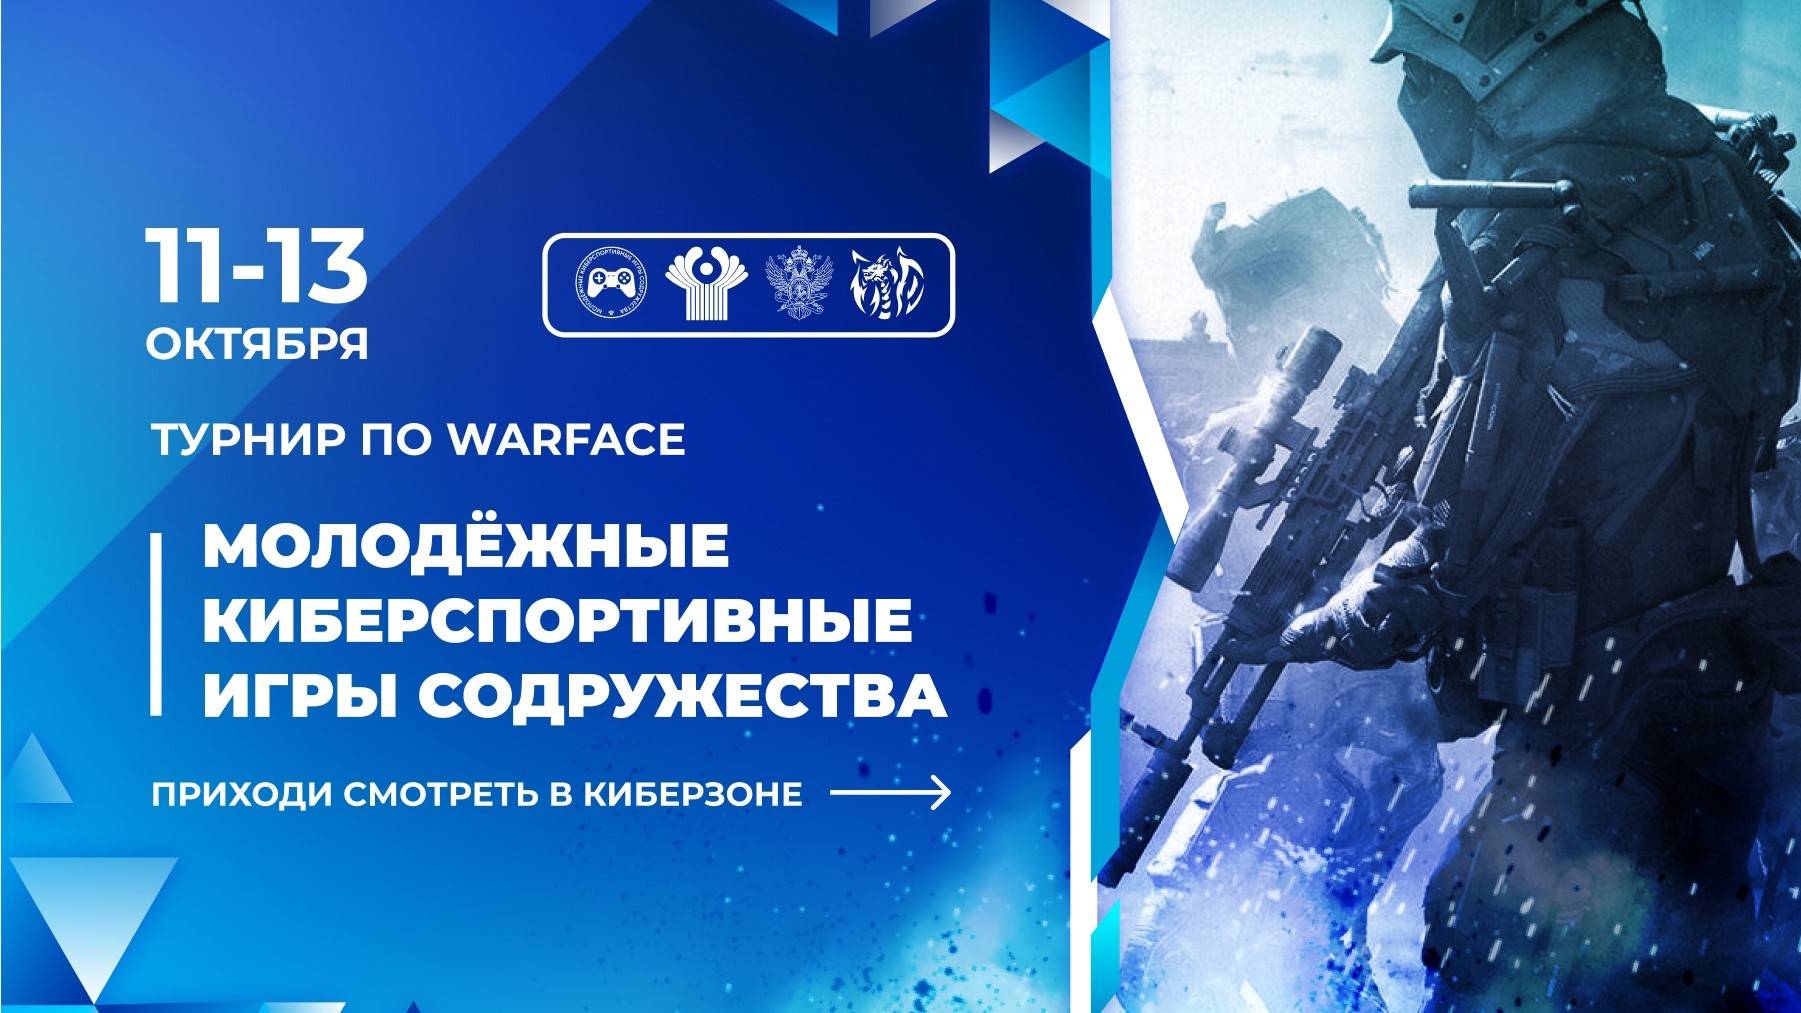 Молодежные киберспортивные игры содружества по дисциплине Warface | Финал